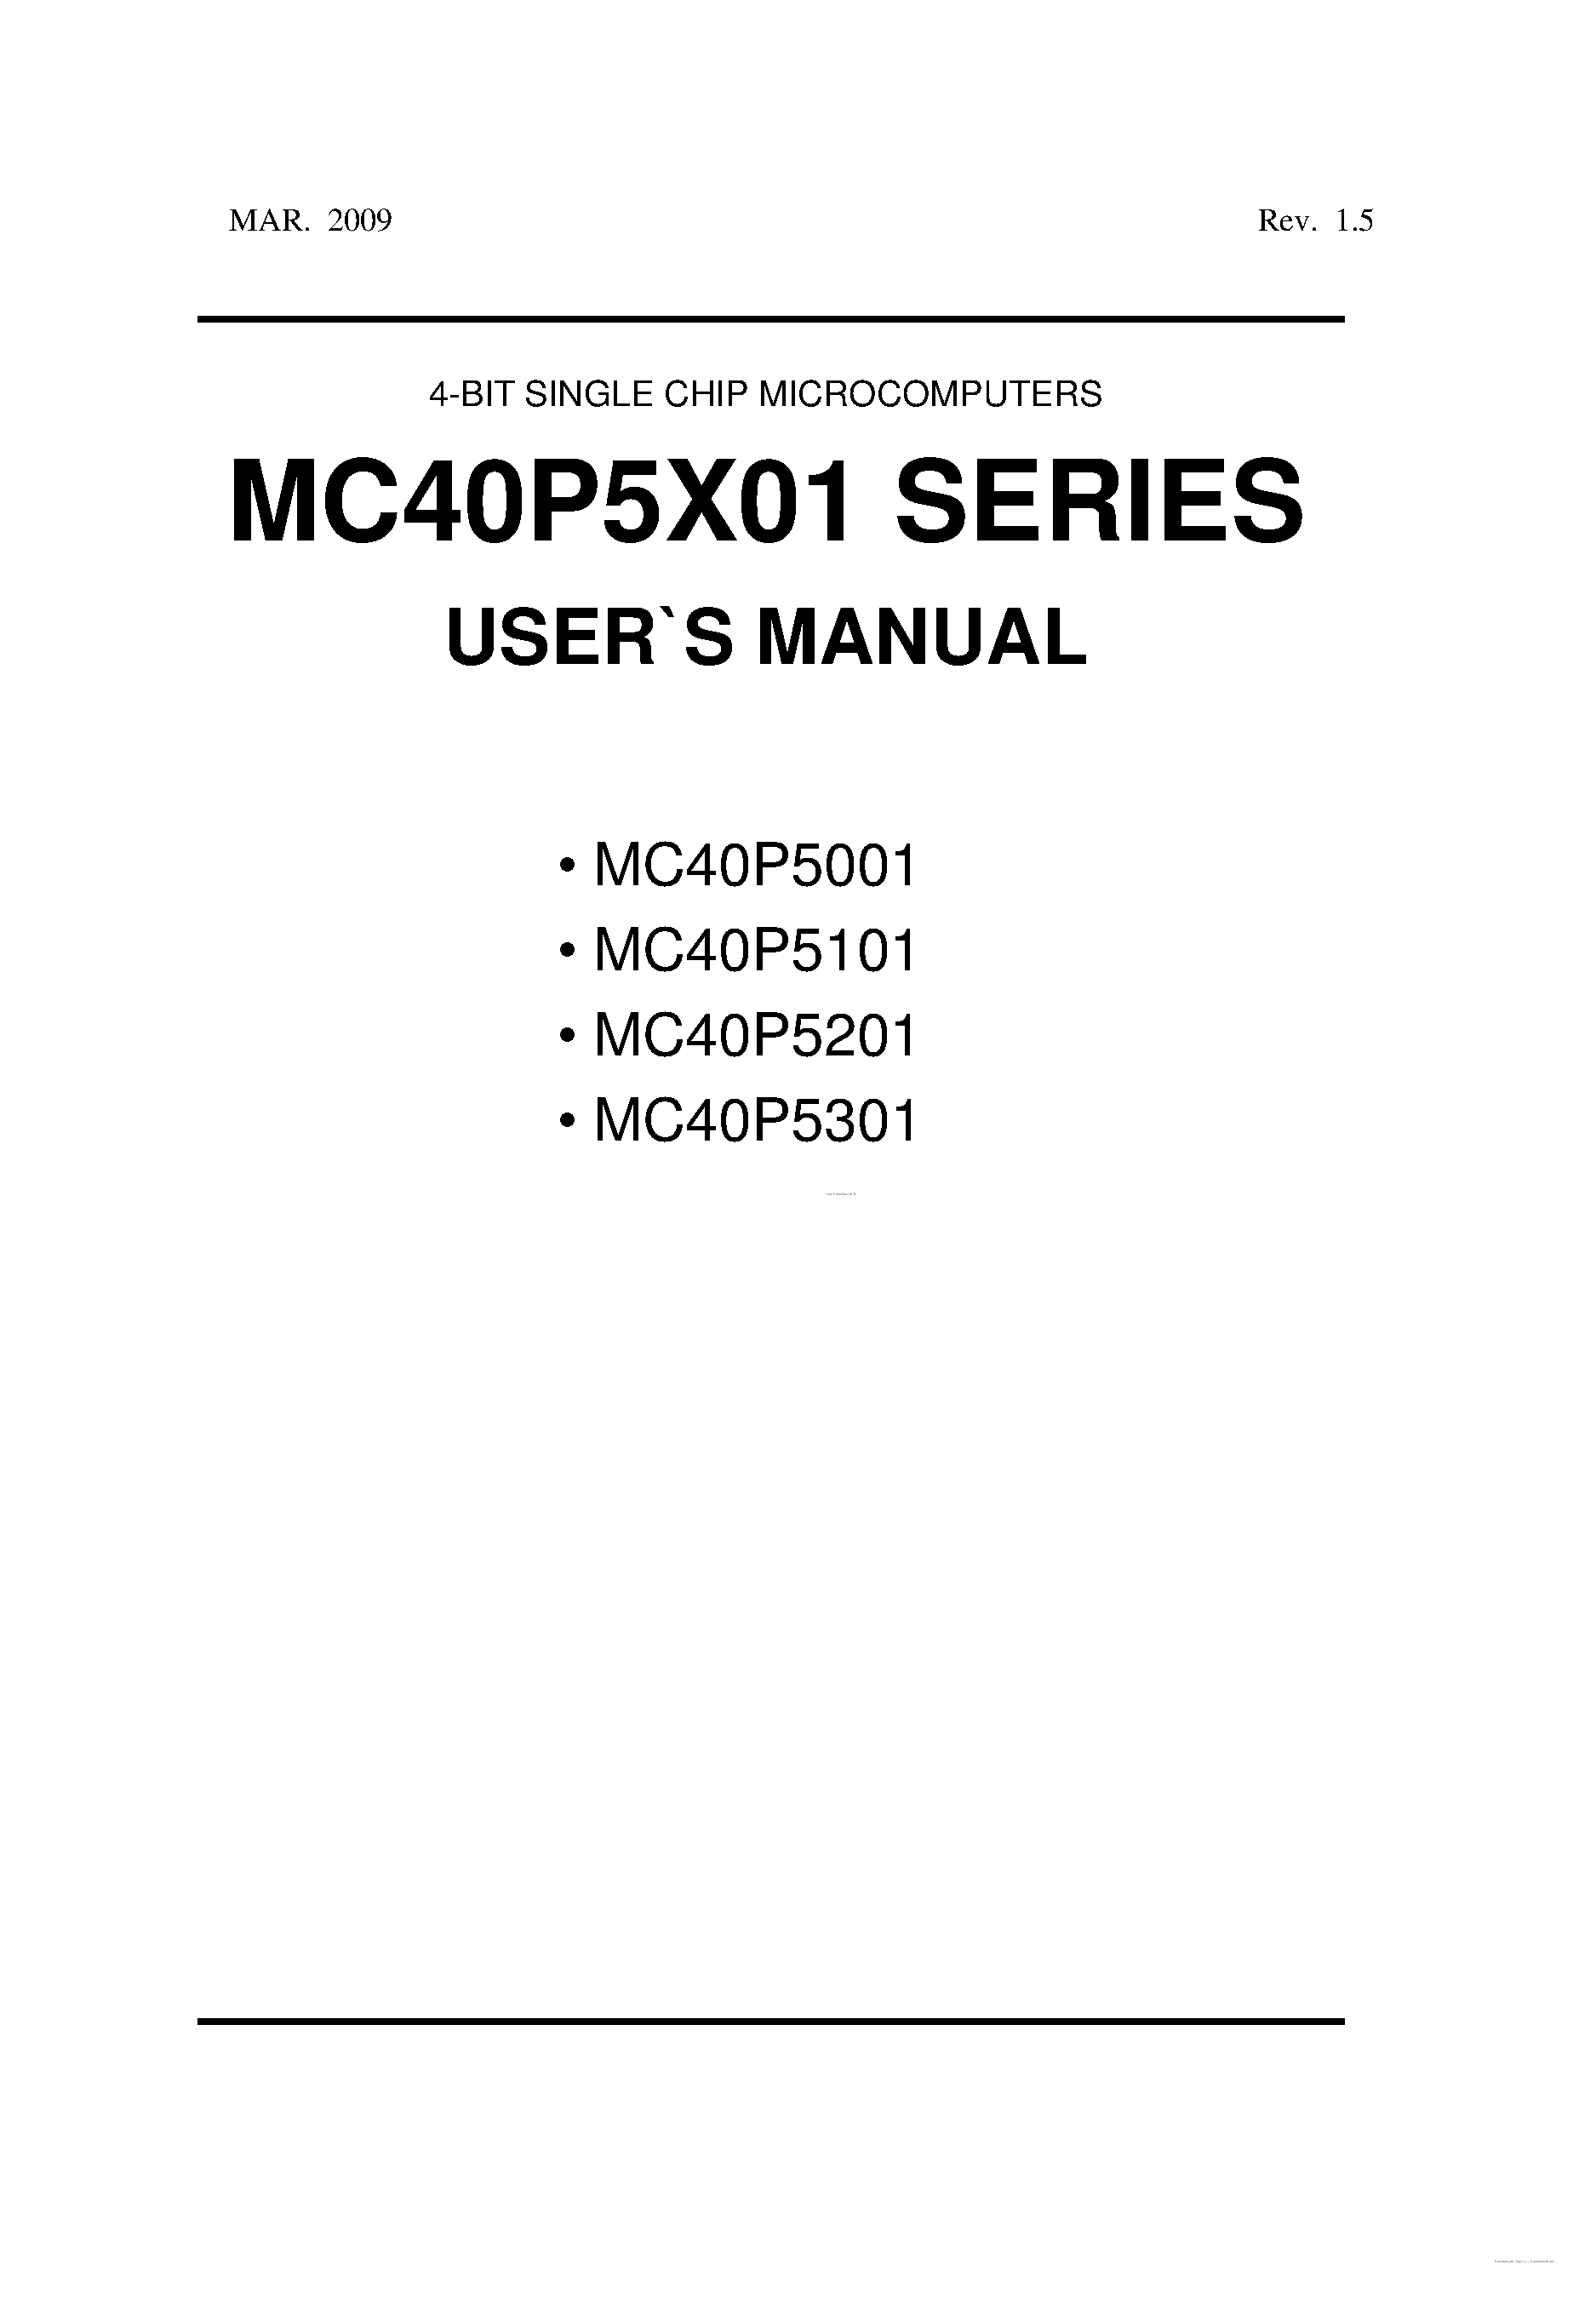 Даташит MC40P5001 - (MC40P5x01) 4-BIT SINGLE CHIP MICROCOMPUTERS страница 1